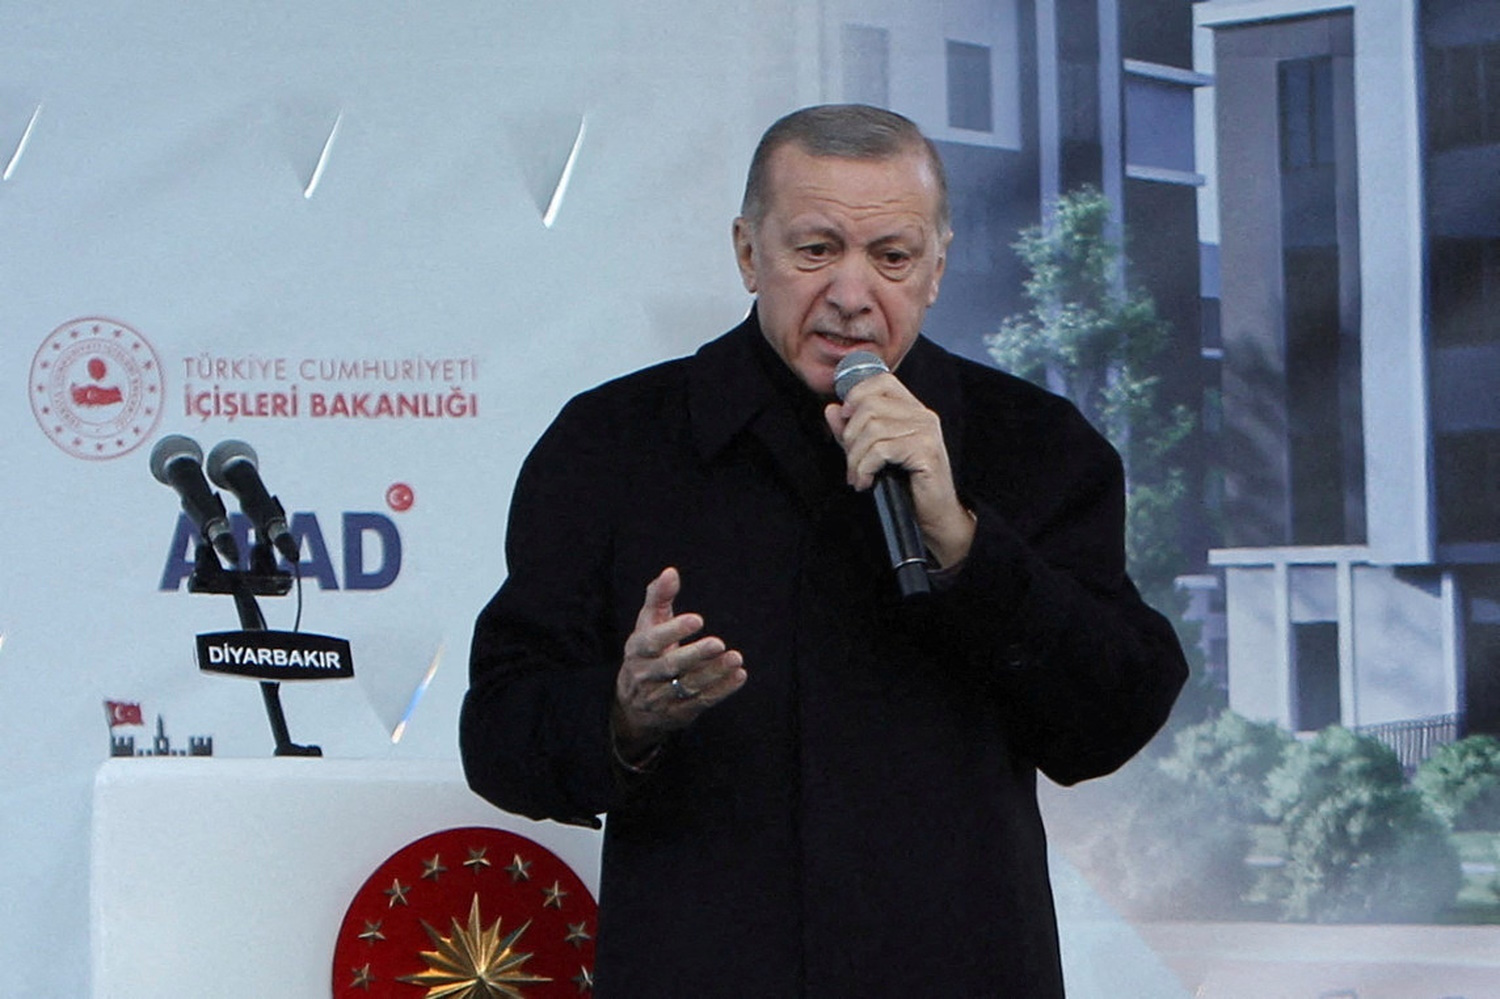 Τουρκικές εκλογές: Ο Ερντογάν τραγουδάει το τραγούδι του – «Εκλιπαρεί για ψήφους» λένε τα ΜΜΕ